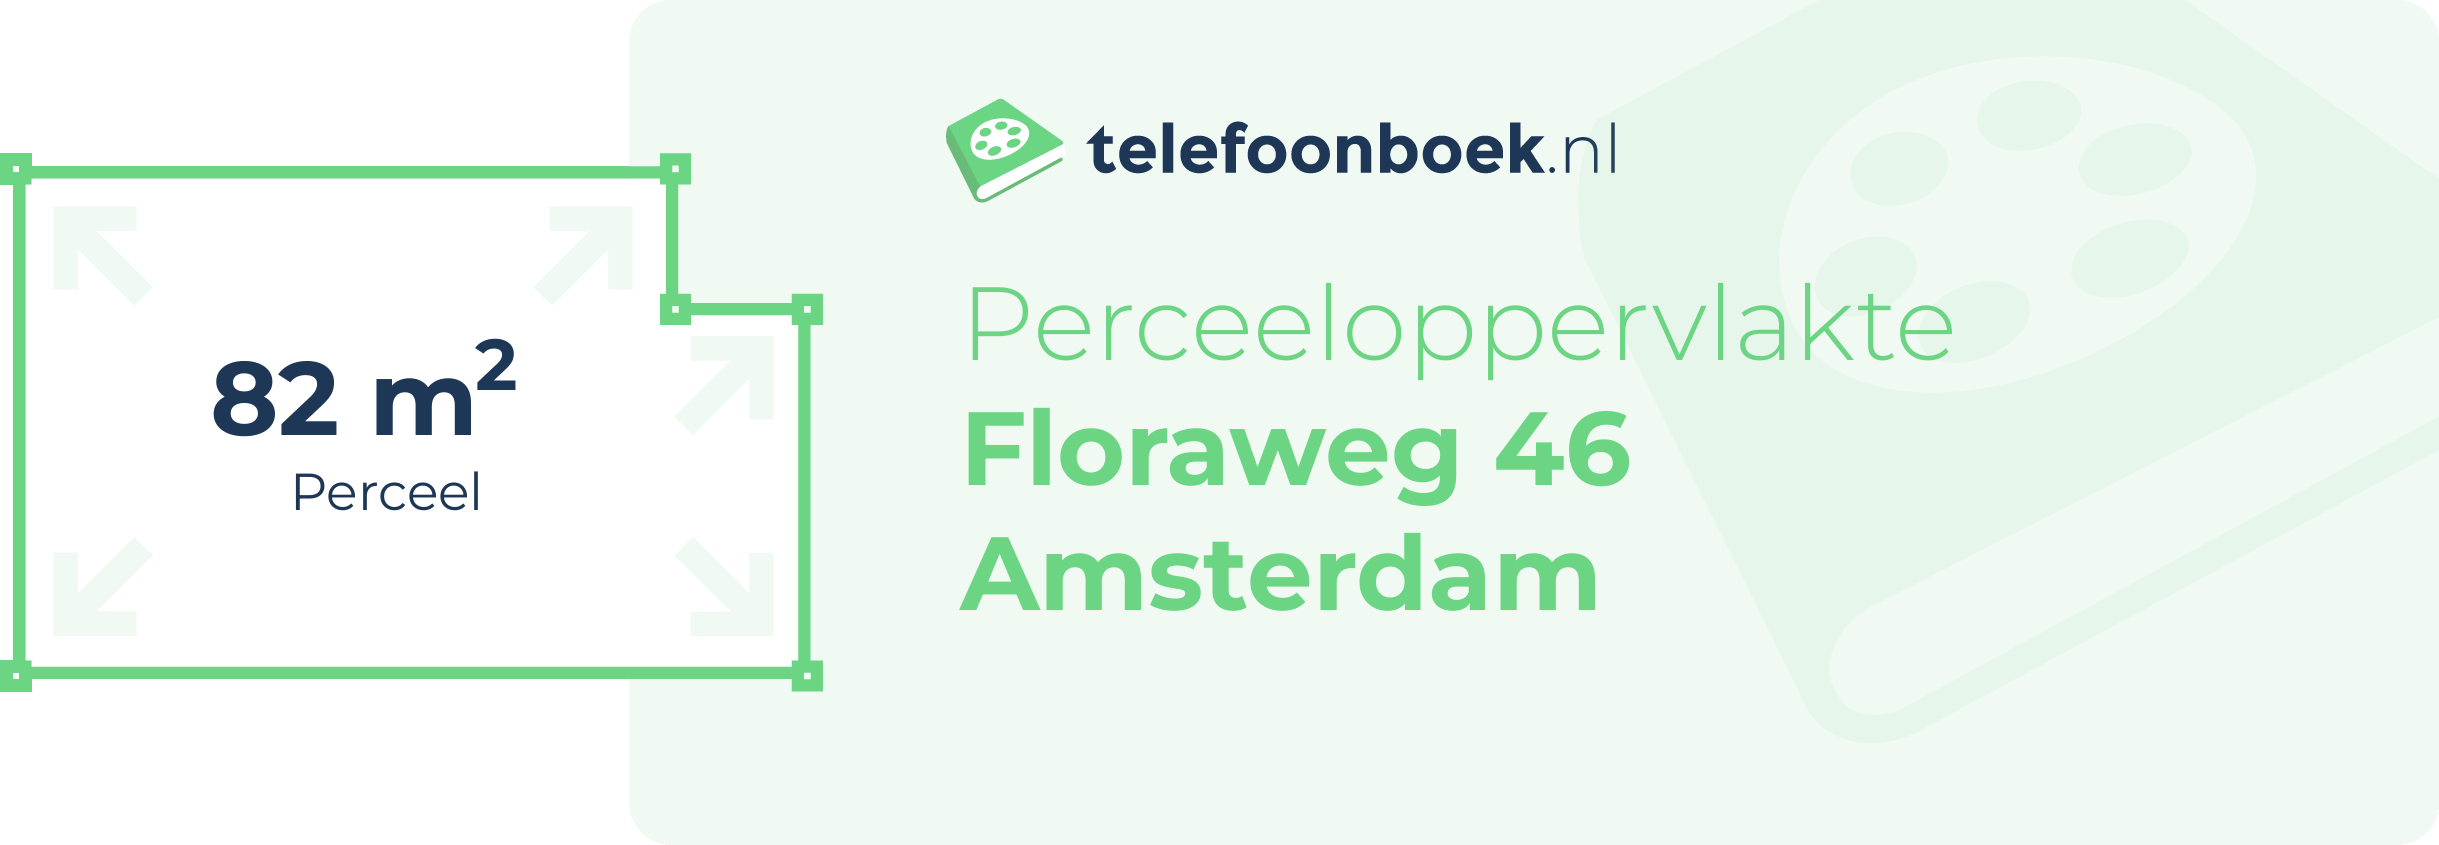 Perceeloppervlakte Floraweg 46 Amsterdam